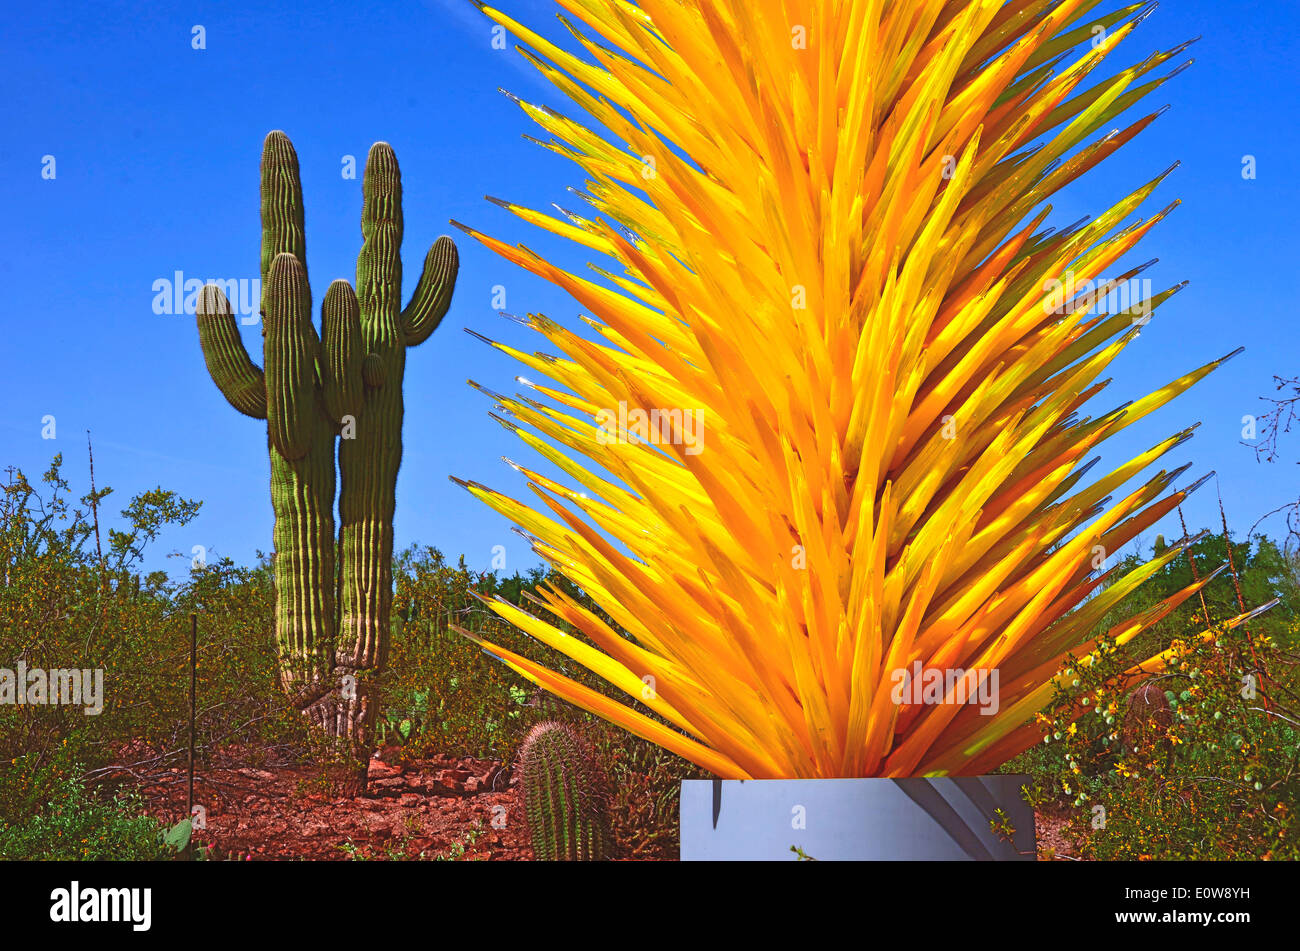 Le légendaire artiste verrier Dale Chihuly expose son travail au Desert Botanical Gardens à Phoenix, Arizona, USA au cours de 2014. Banque D'Images